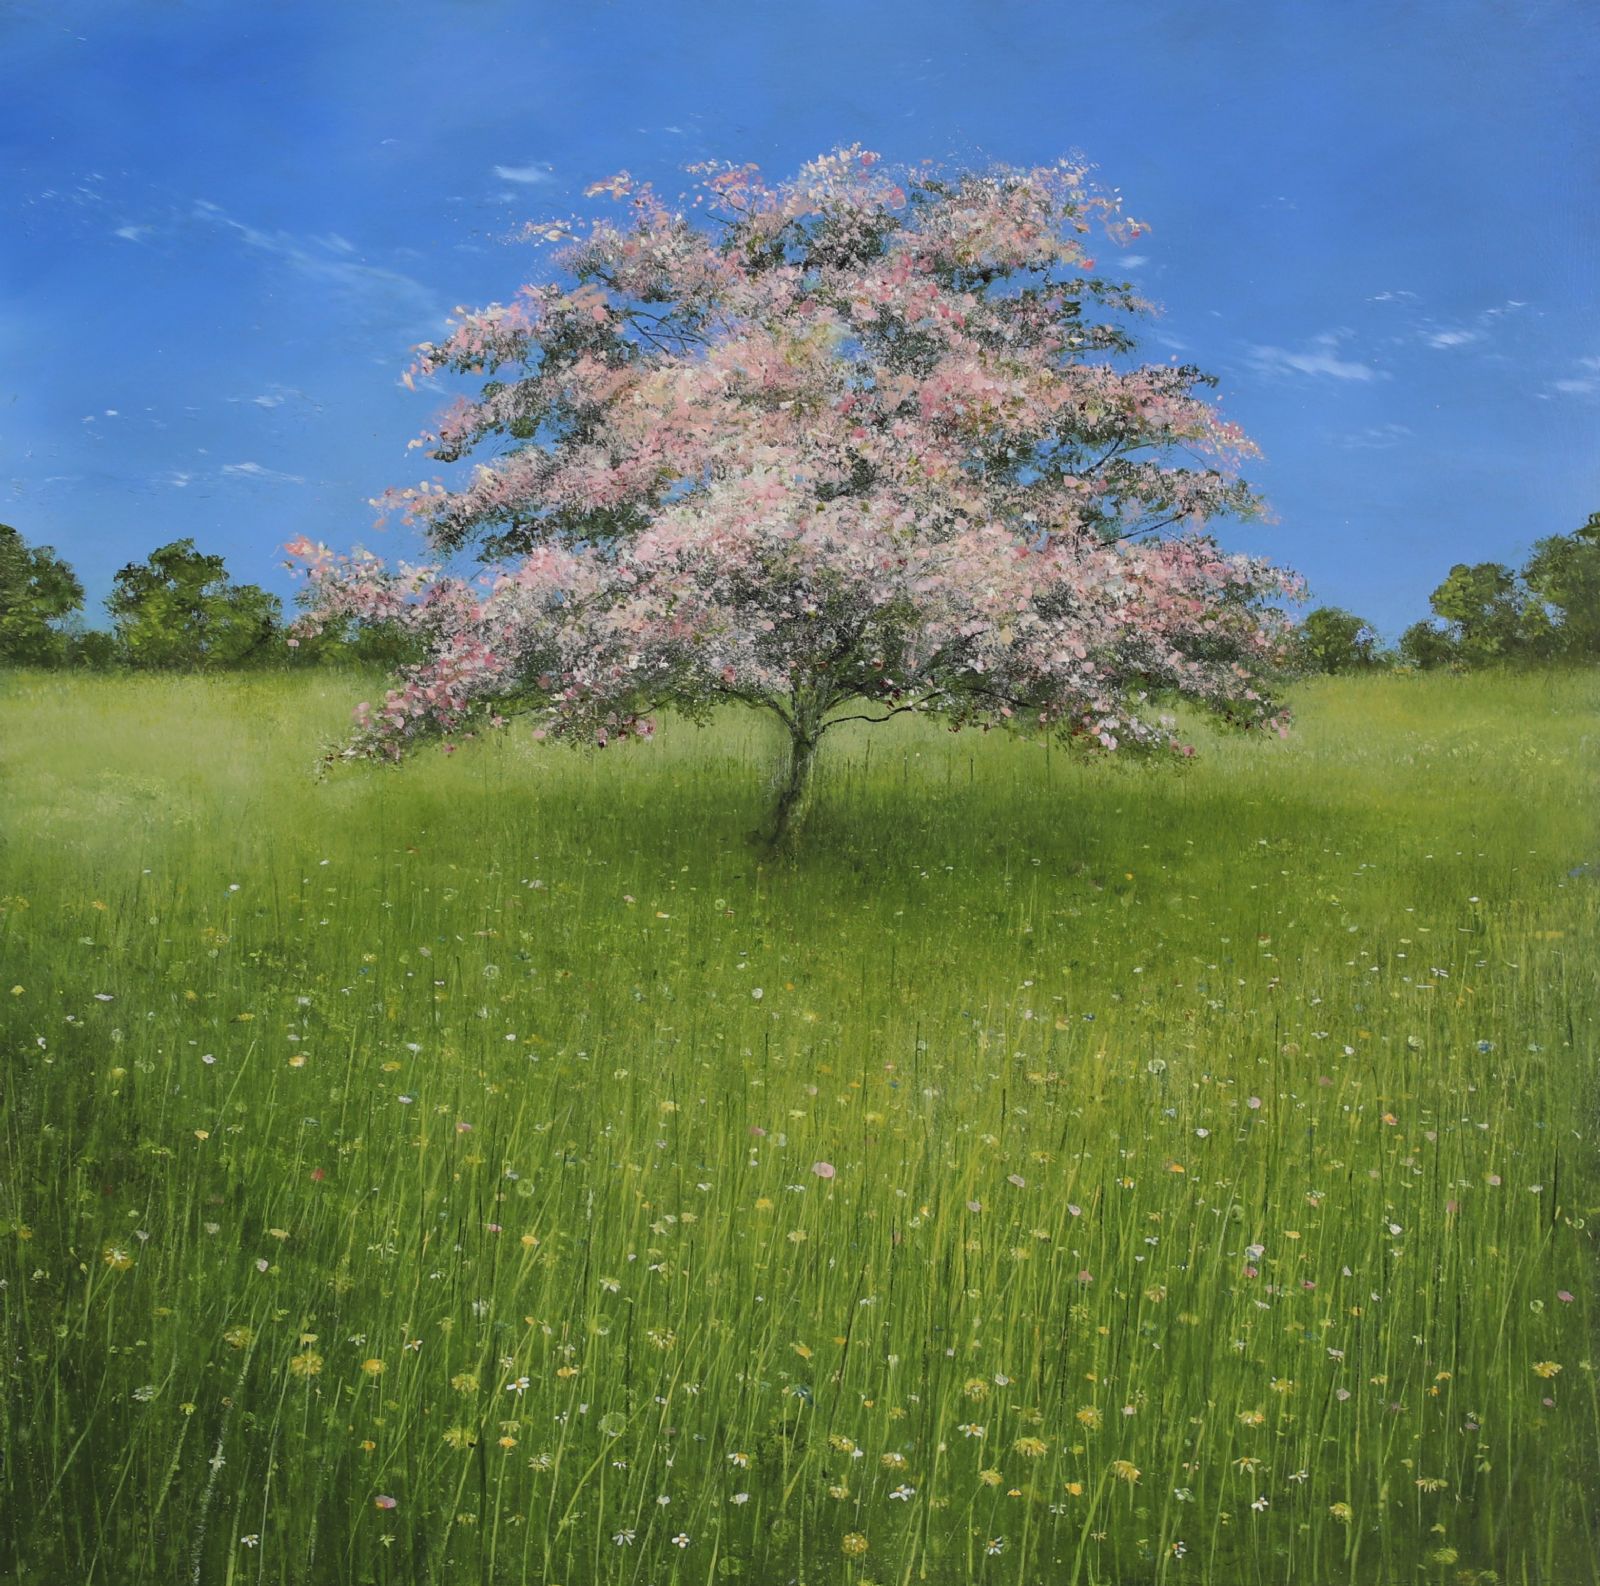 Blossom Dreams by Garry Pereira